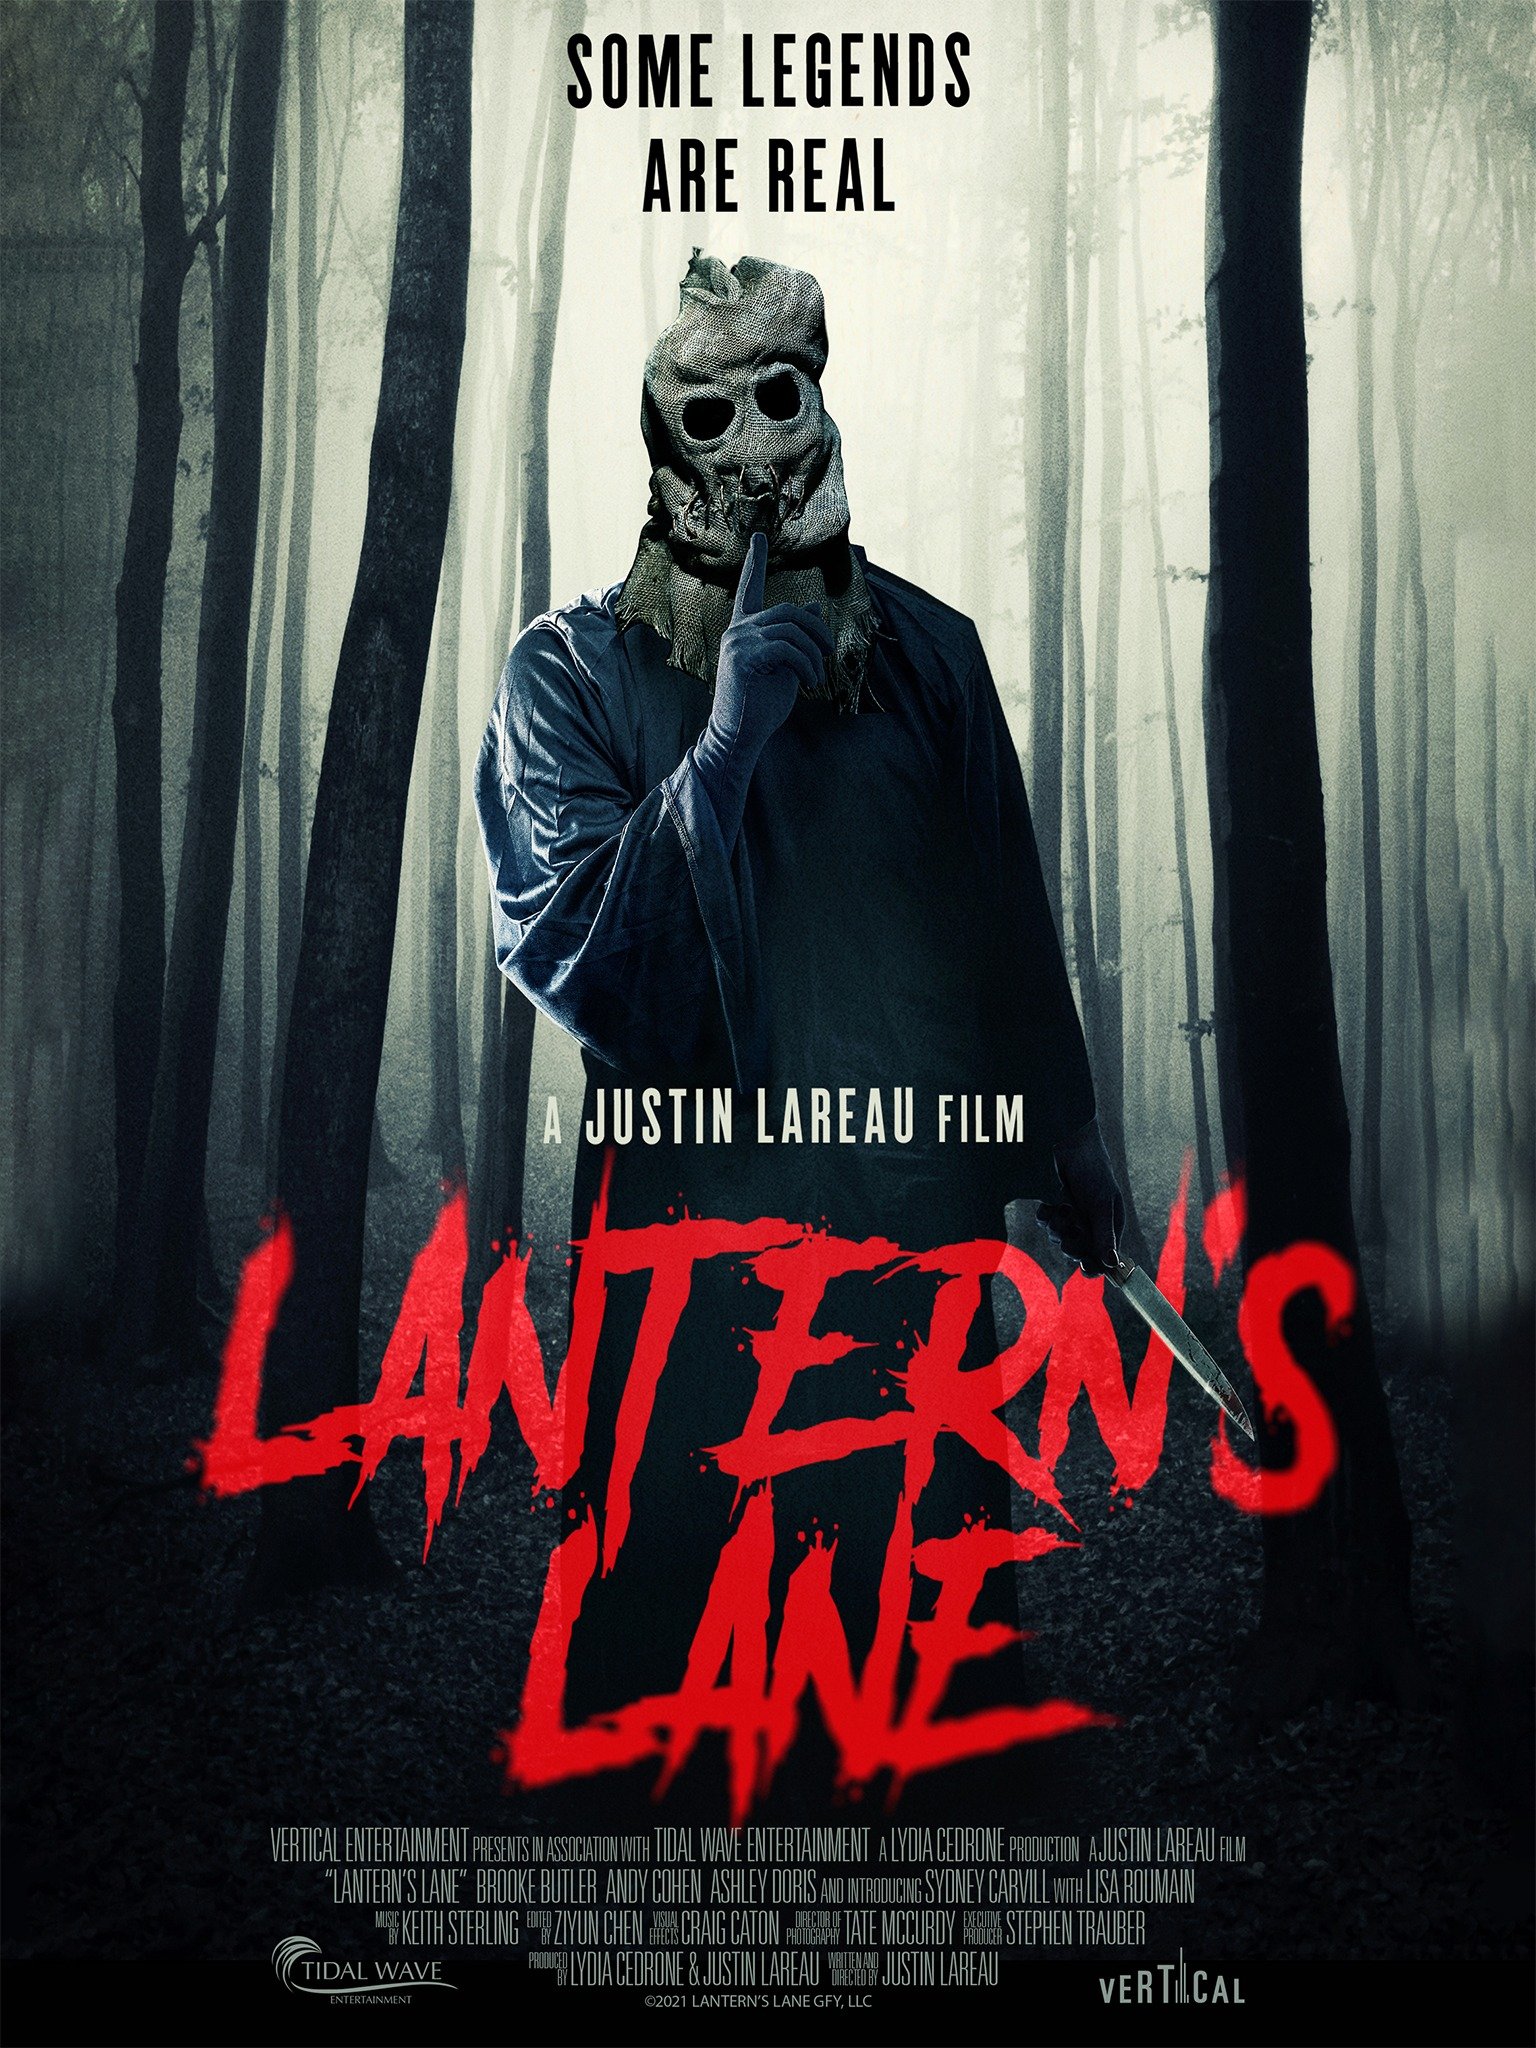 Lantern’s Lane Ending Explained [SPOILER!]